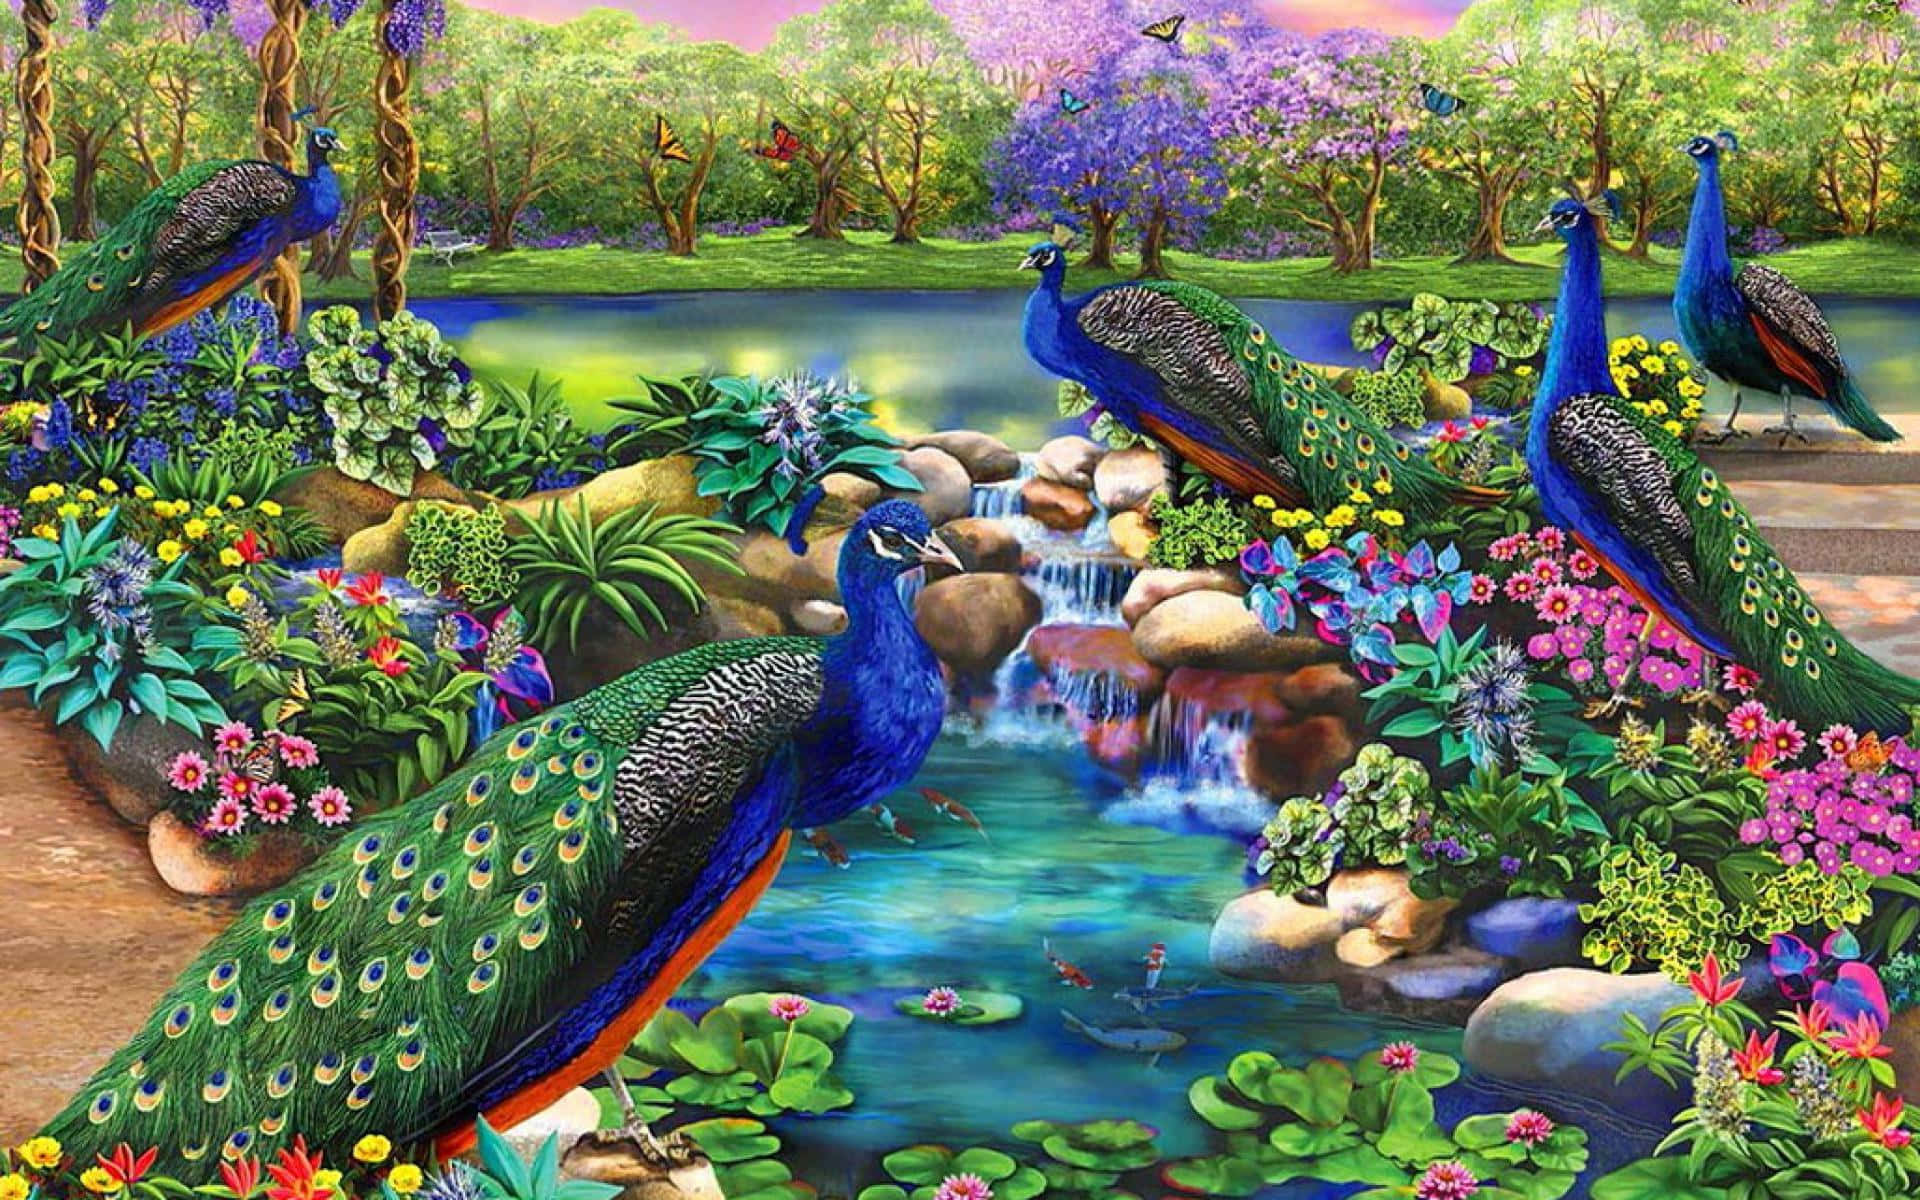 Peacocksin Enchanted Garden Wallpaper